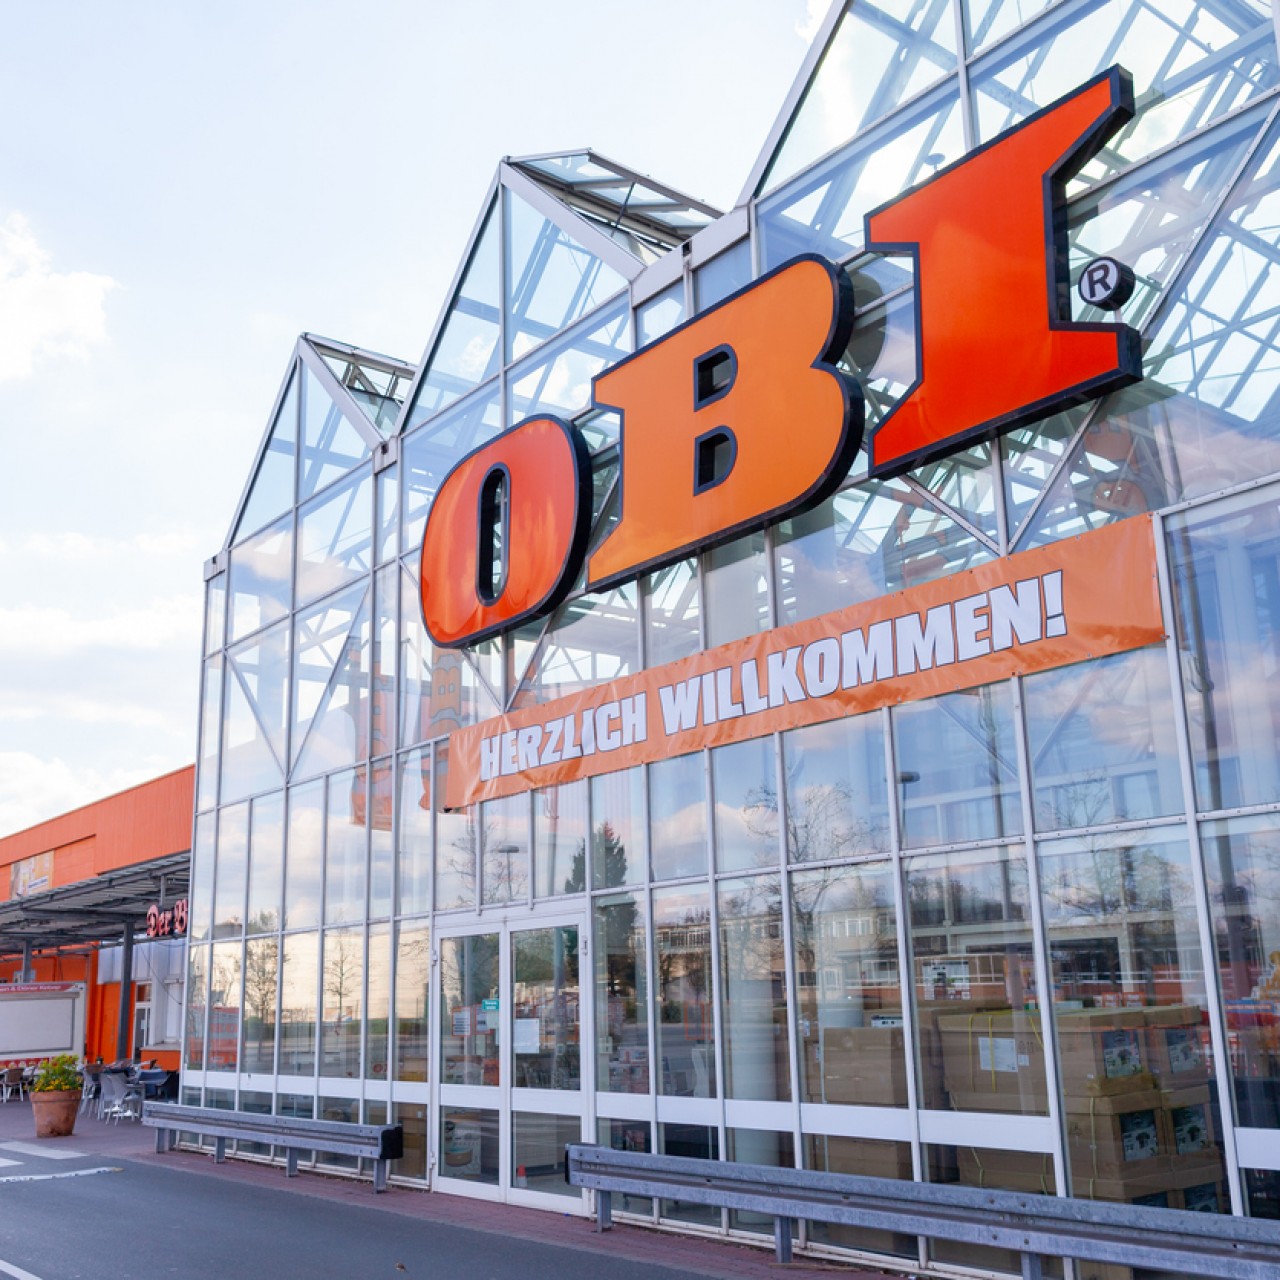 Сеть OBI четвертый раз за год сменила собственников в России